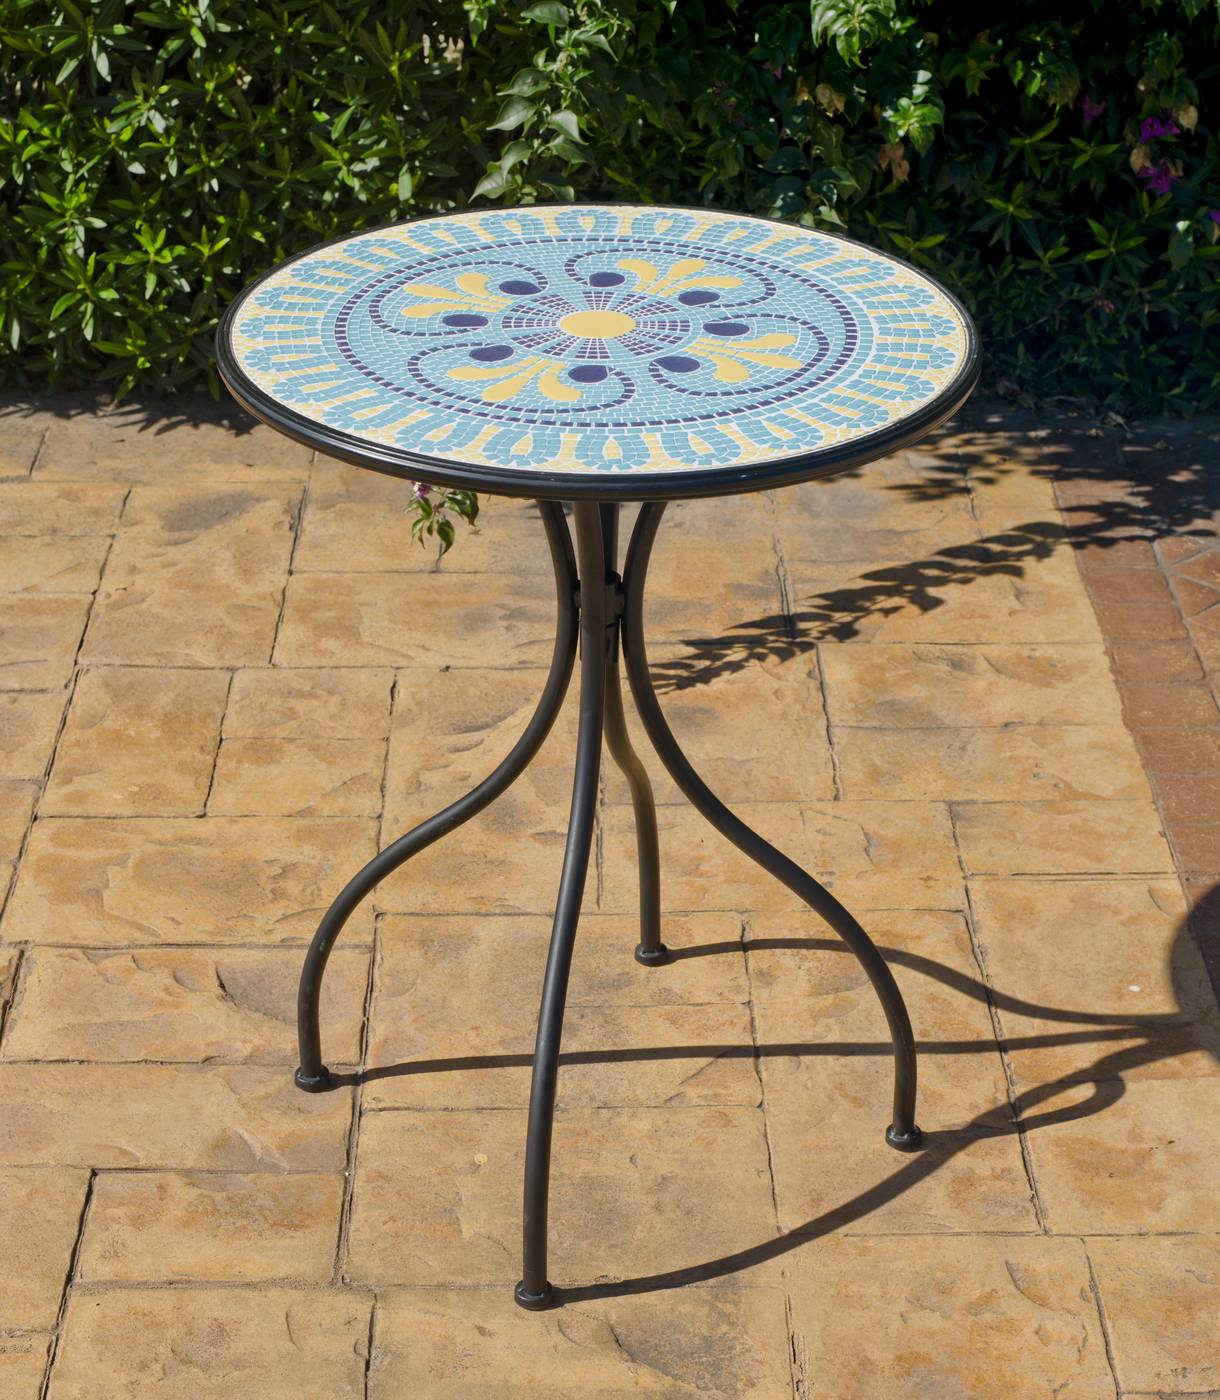 Set Mosaico Dorian-Santana - Conjunto de acero color gris: mesa de acero forjado, con tablero mosaico circular de 60 cm. + 2 sillones apilables de wicker